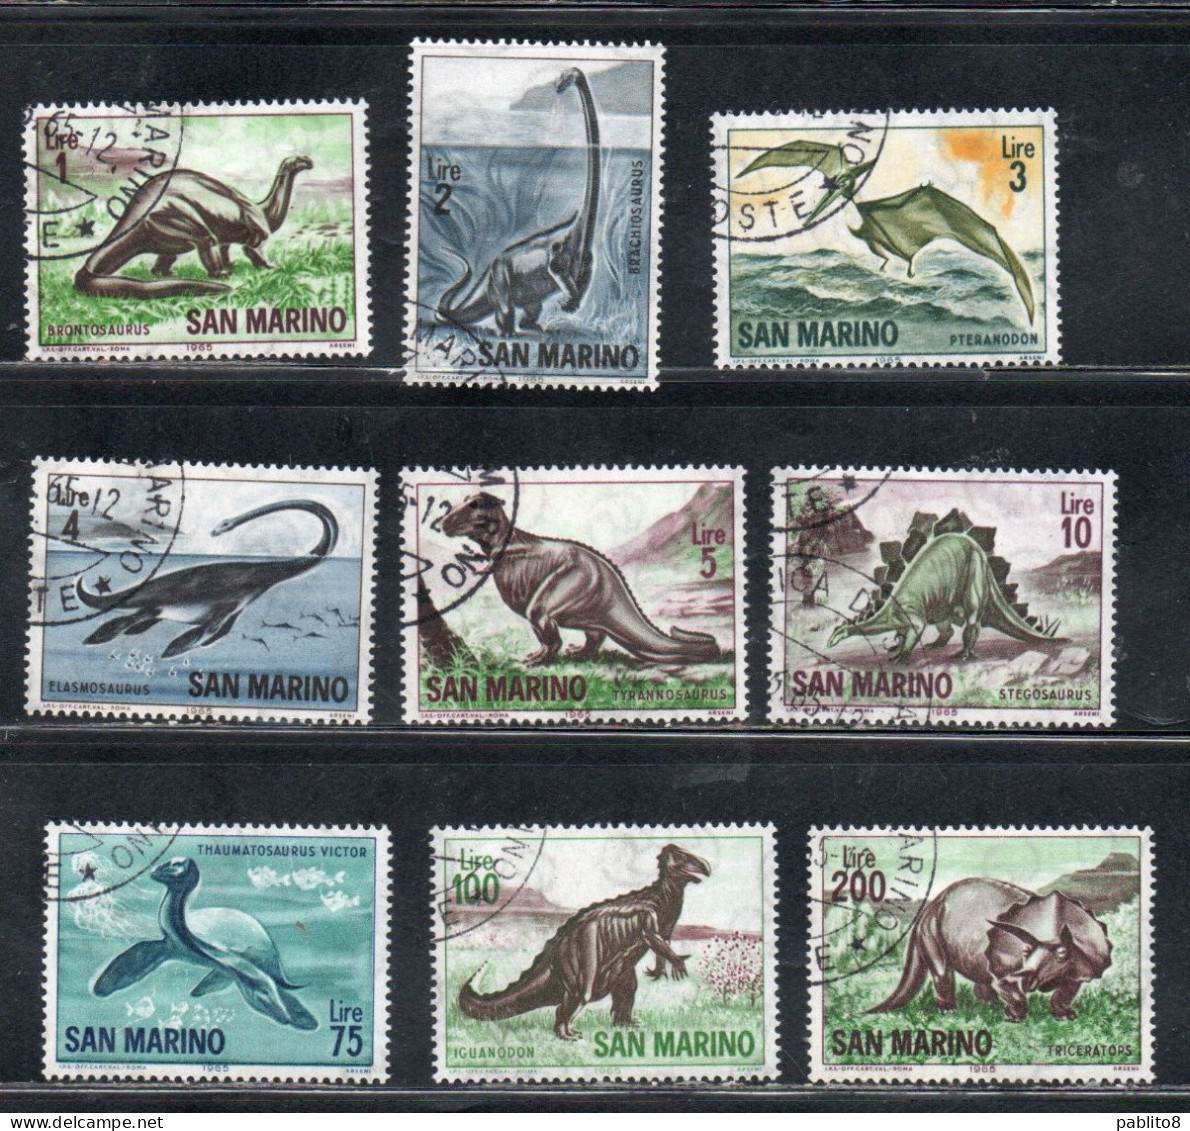 REPUBBLICA DI SAN MARINO 1965 ANIMALI PREISTORIA SERIE COMPLETA COMPLETE SET USATA USED OBLITERE' - Used Stamps